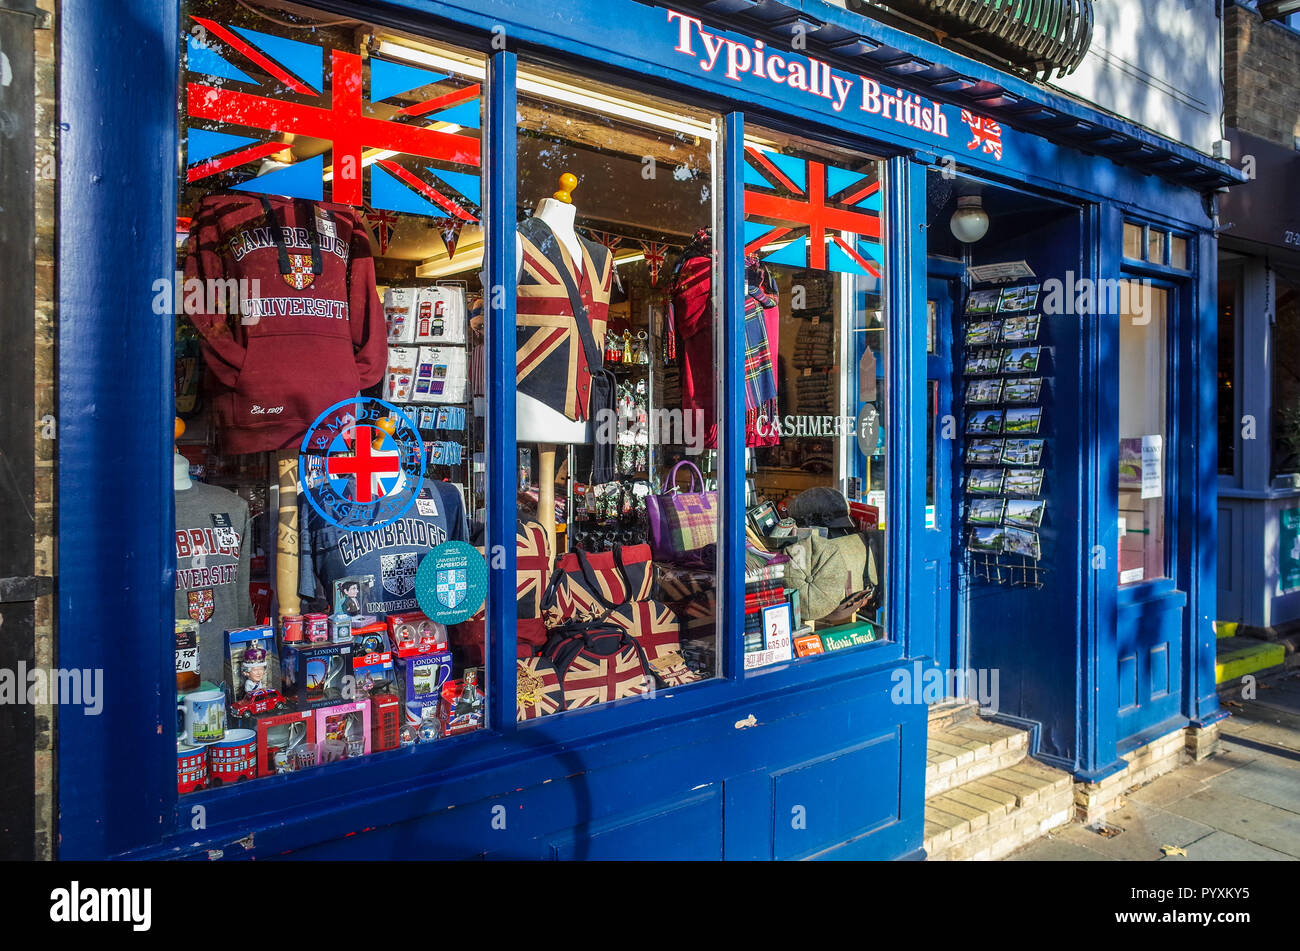 Cambridge Tourist Gift Shop - magasin de souvenirs et de cadeaux typiquement britannique dans le centre historique de Cambridge au Royaume-Uni Banque D'Images